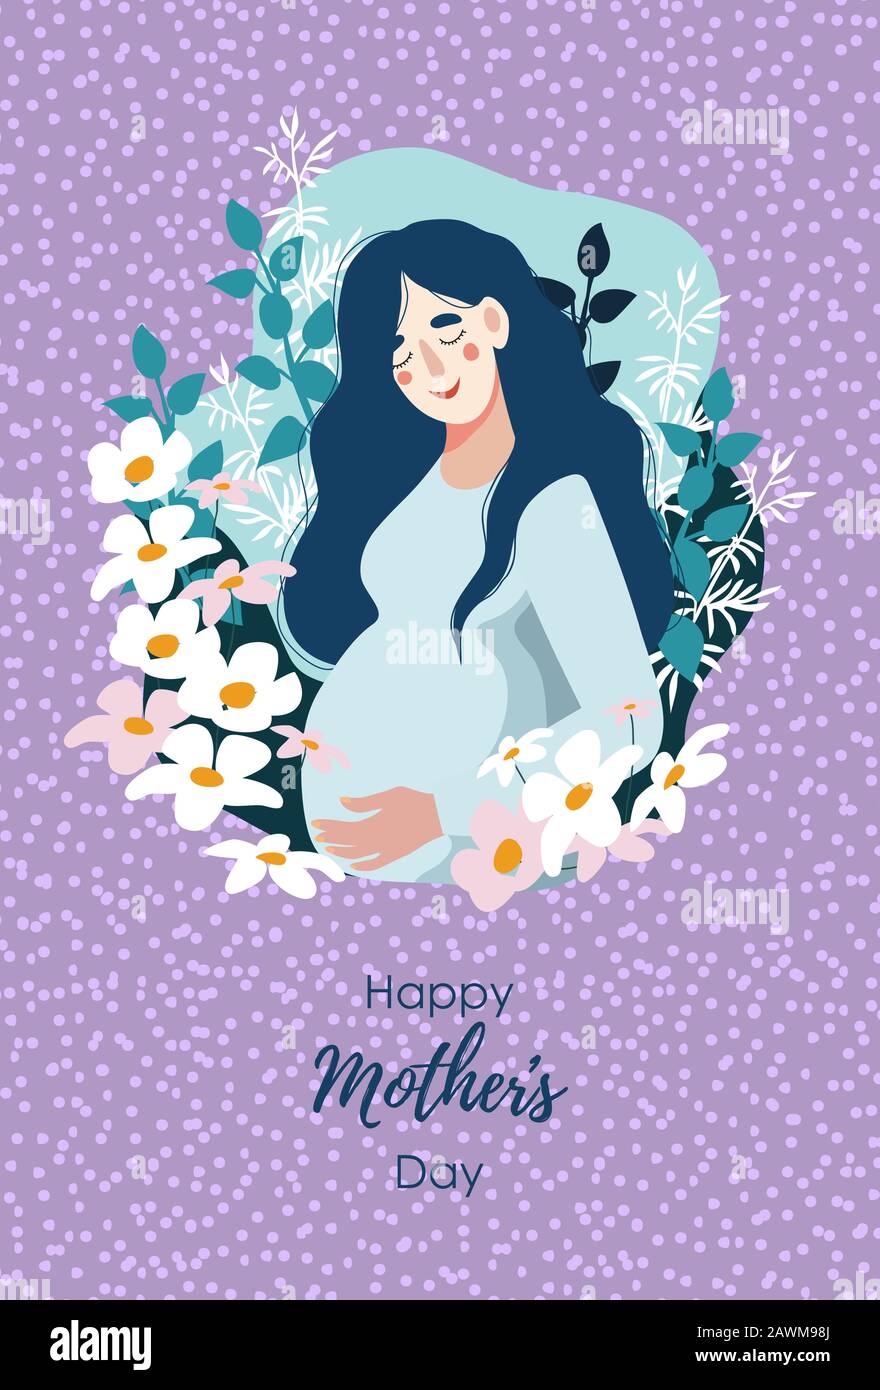 Bonne Fête Des Mères. Femme enceinte entourée de nombreuses fleurs. Illustration plate vectorielle verticale. Illustration de Vecteur